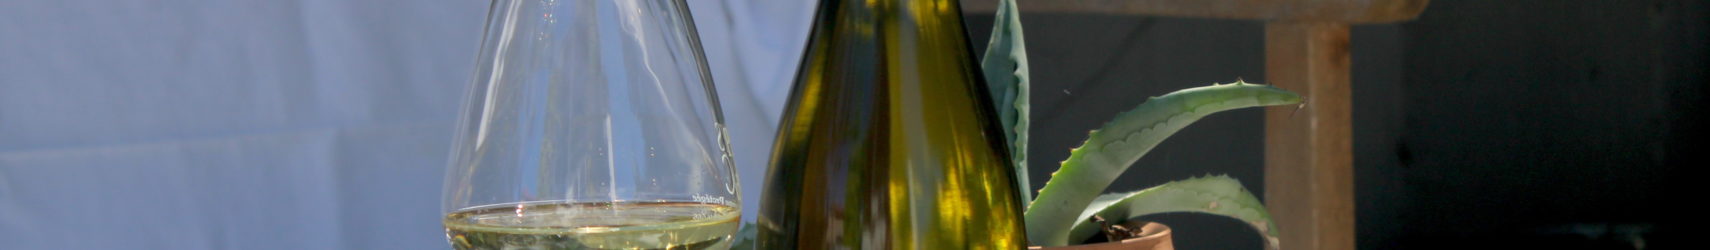 La cuvée « Colombard-Chardonnay », une nouvelle signature